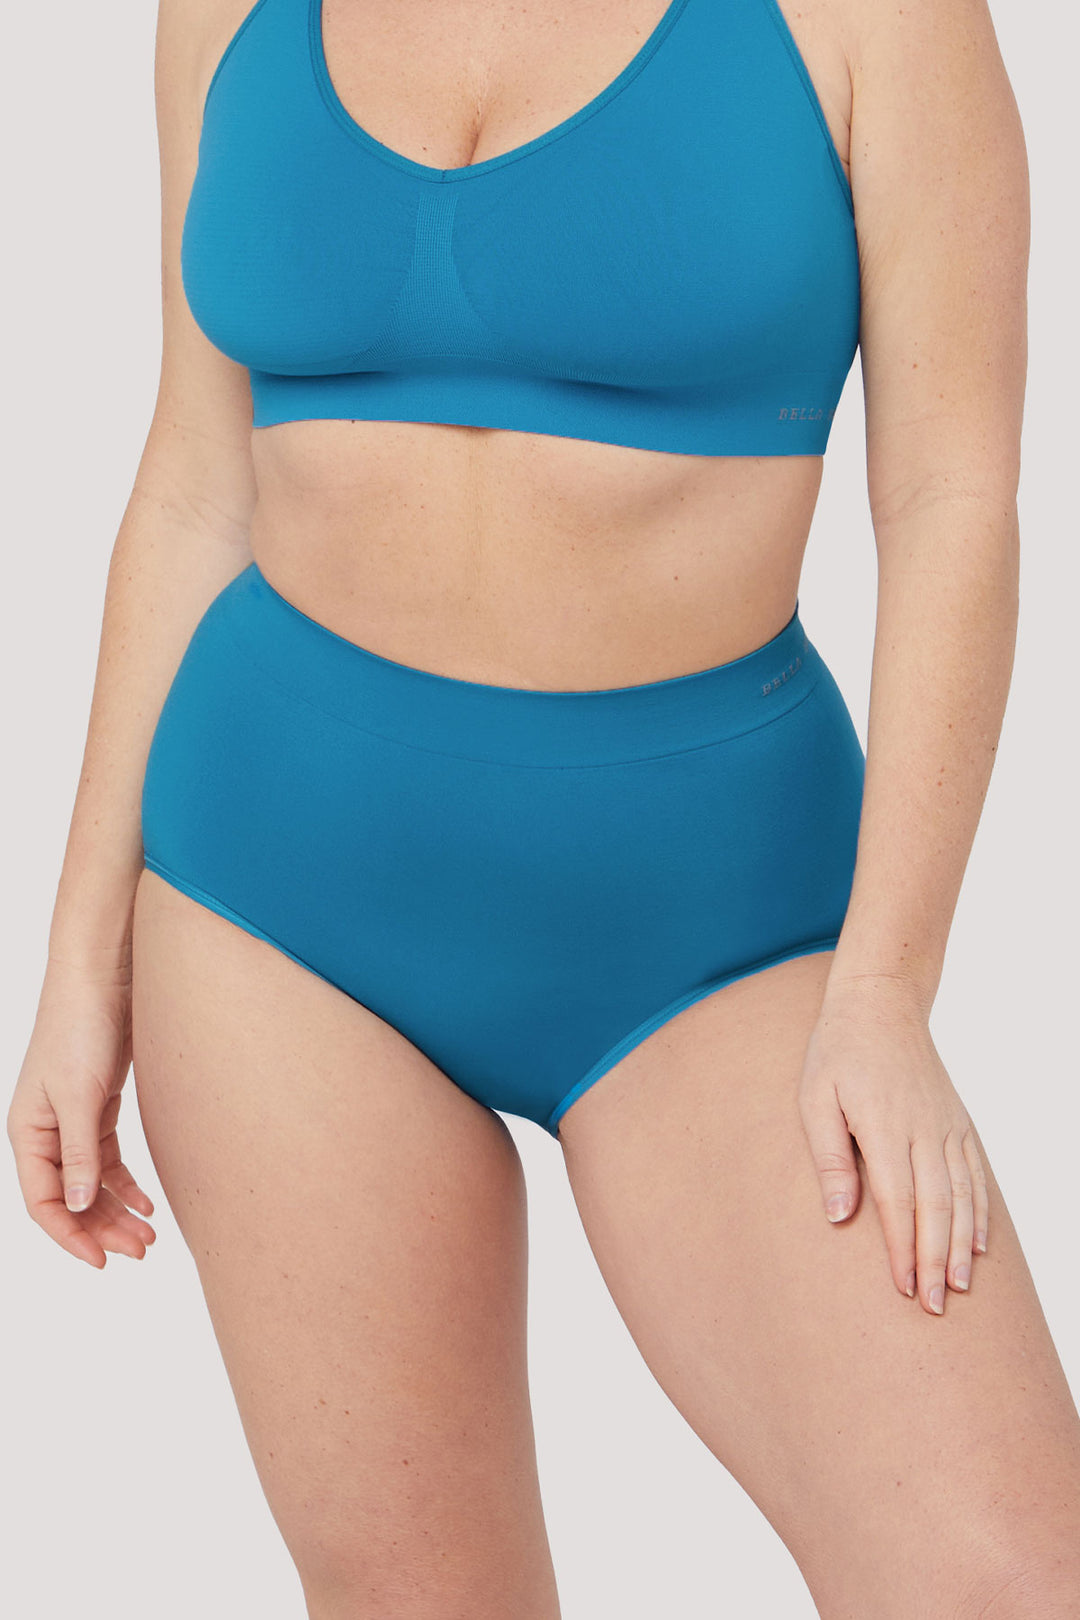 Women's High Waist Underwear 3 pack I Bella Bodies Australia I Blue Teal | Front